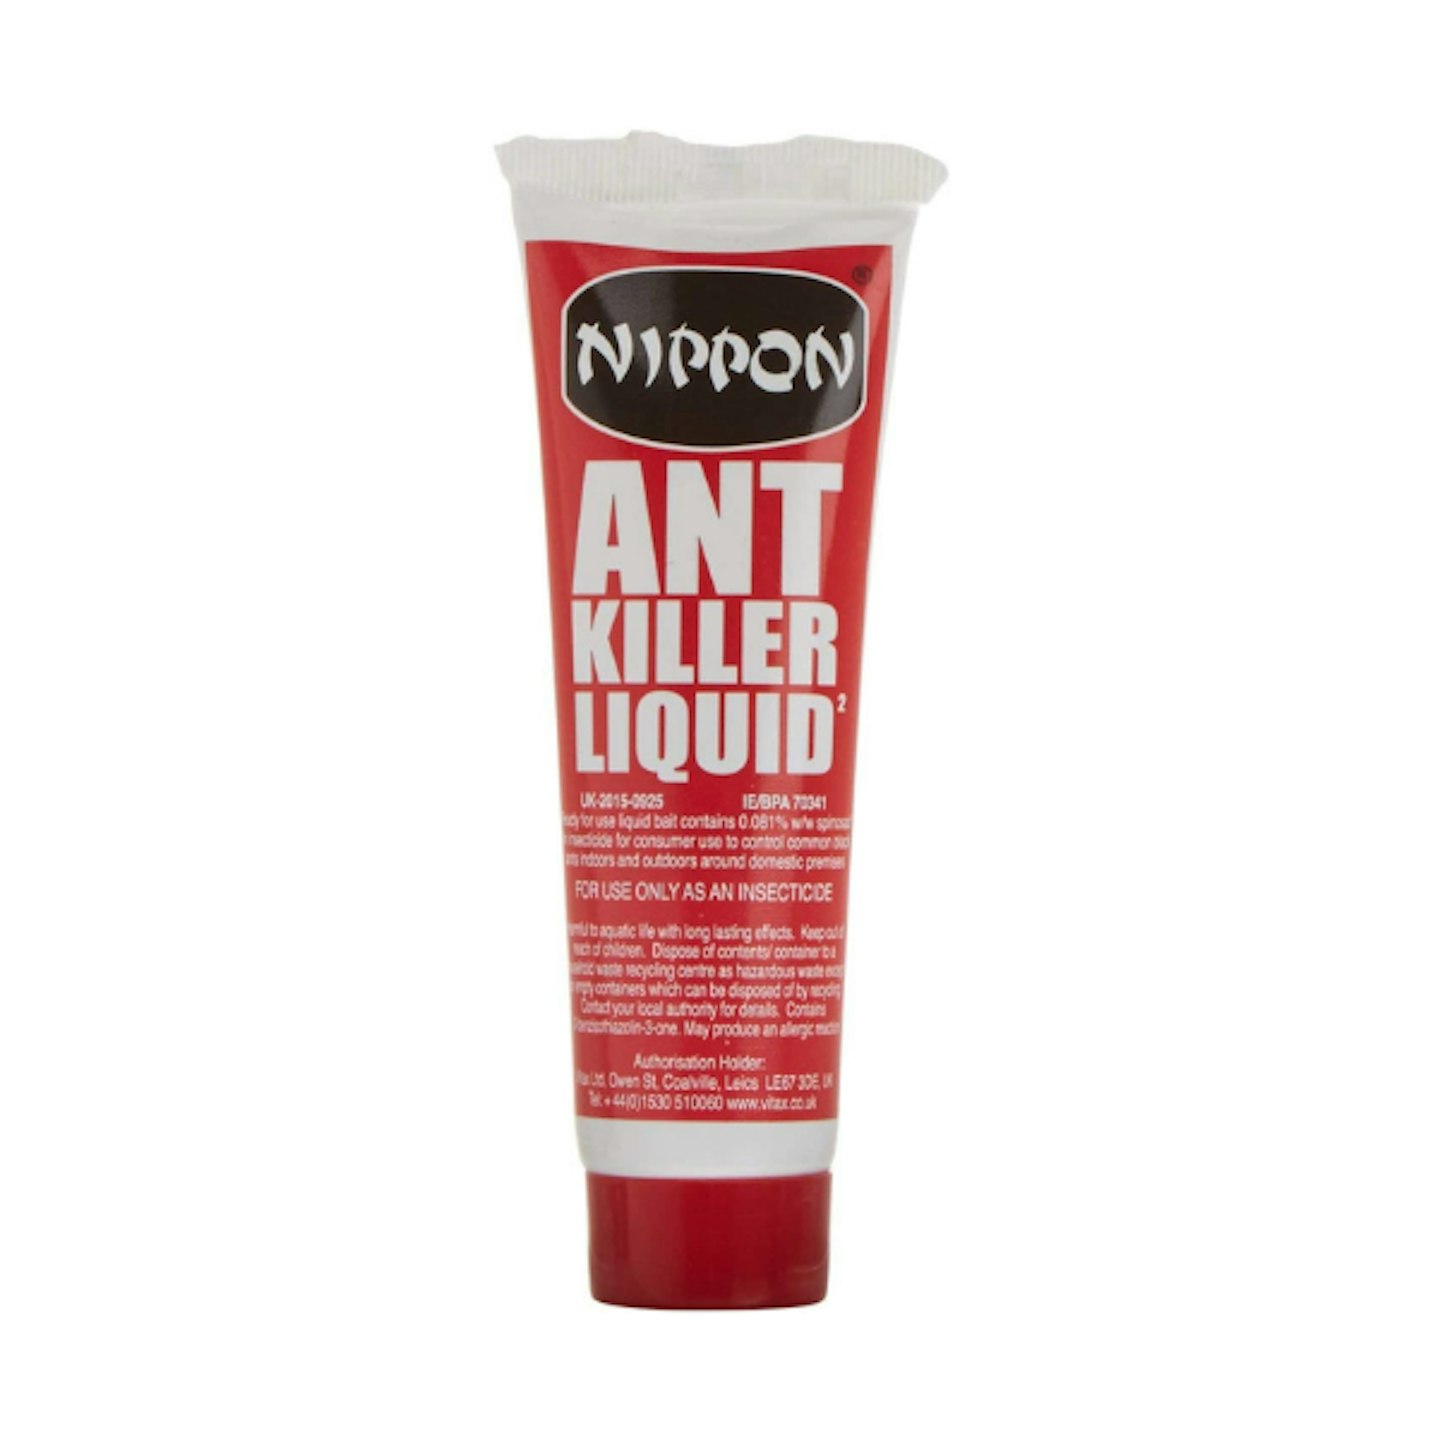 Ant Killer Liquid